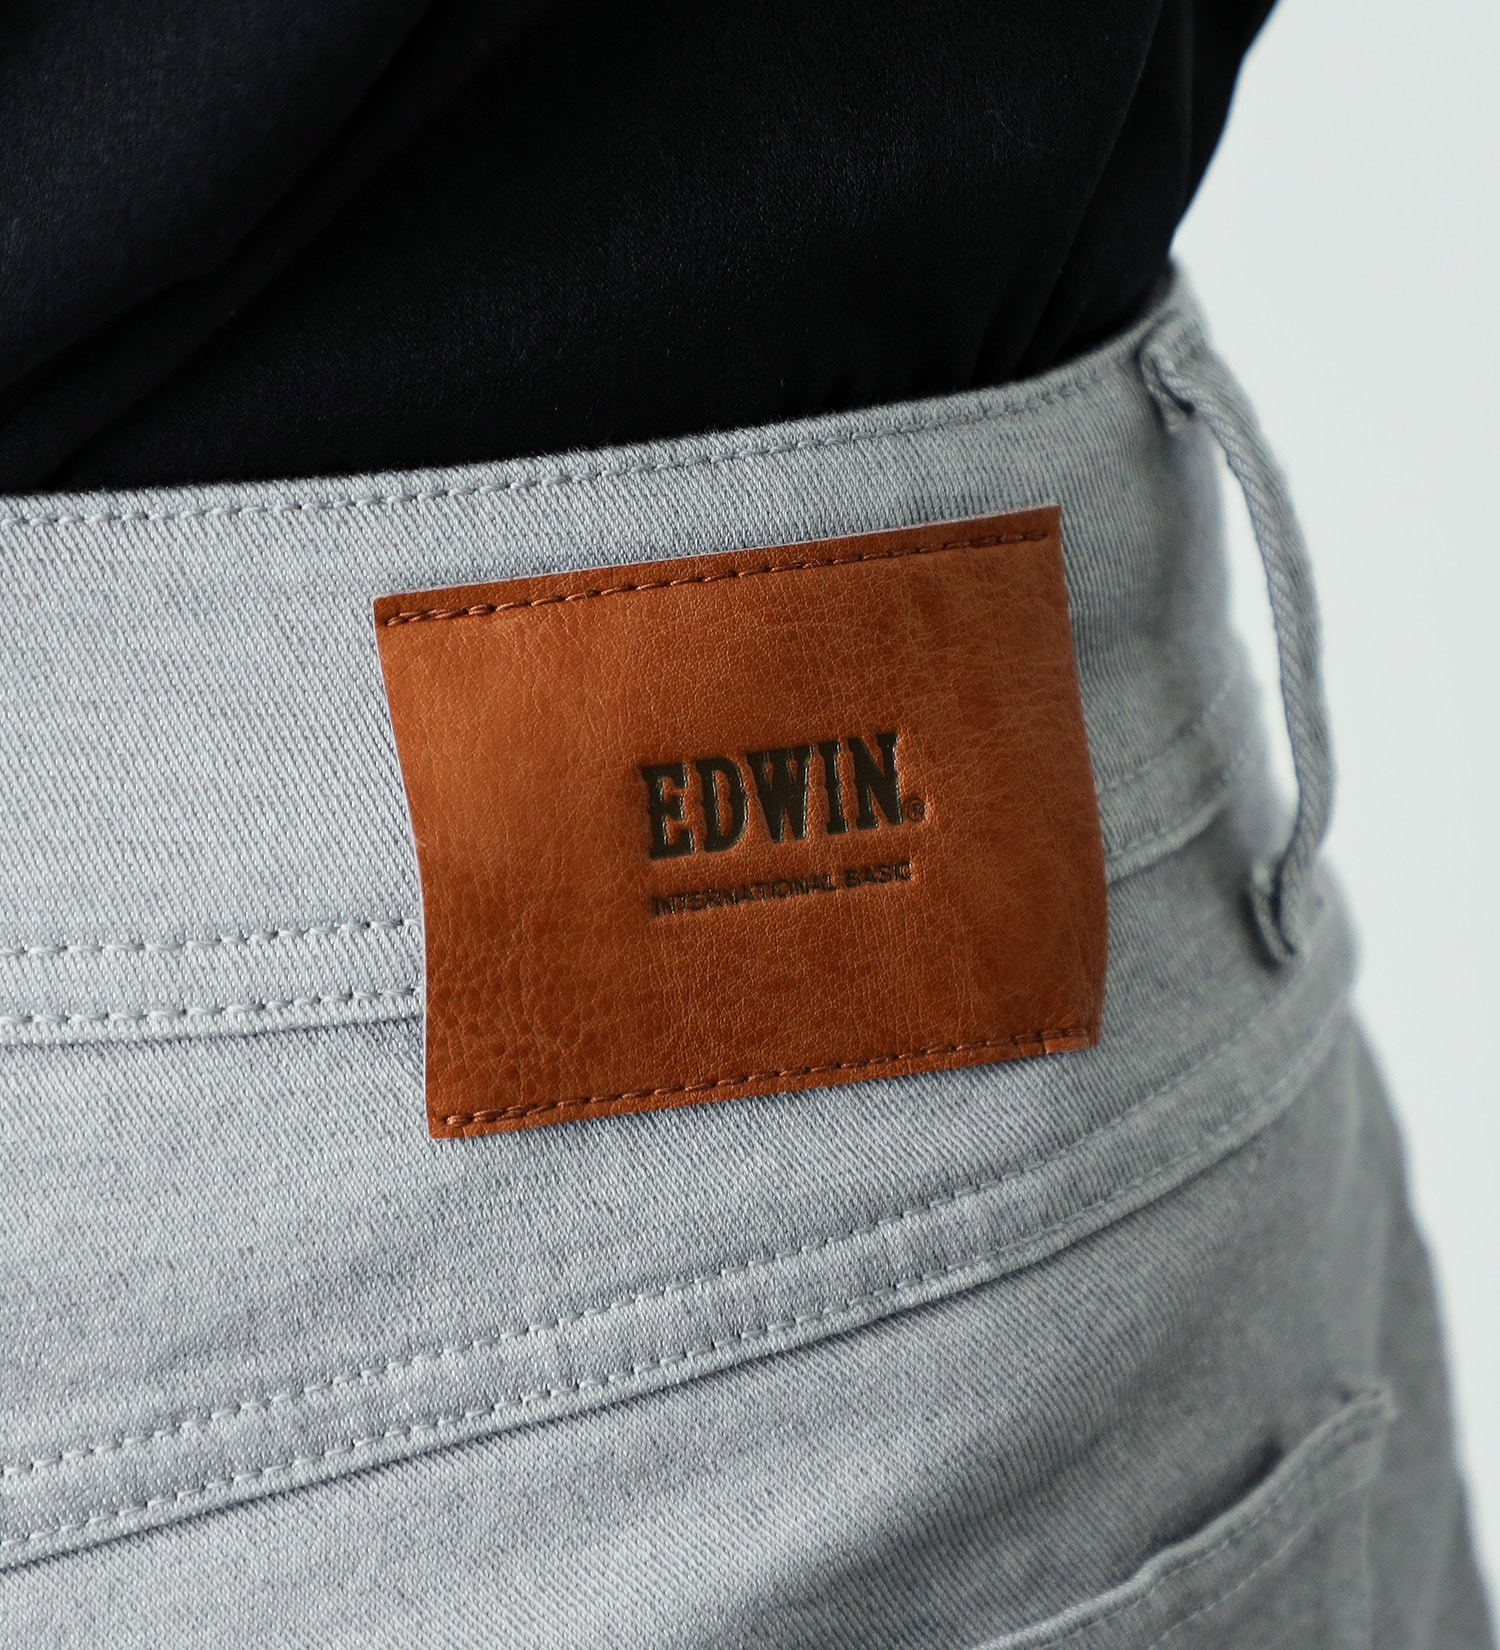 EDWIN(エドウイン)の【試着対象】EDWIN LADIES インターナショナルベーシック ゆったりストレートパンツ|パンツ/パンツ/レディース|グレー